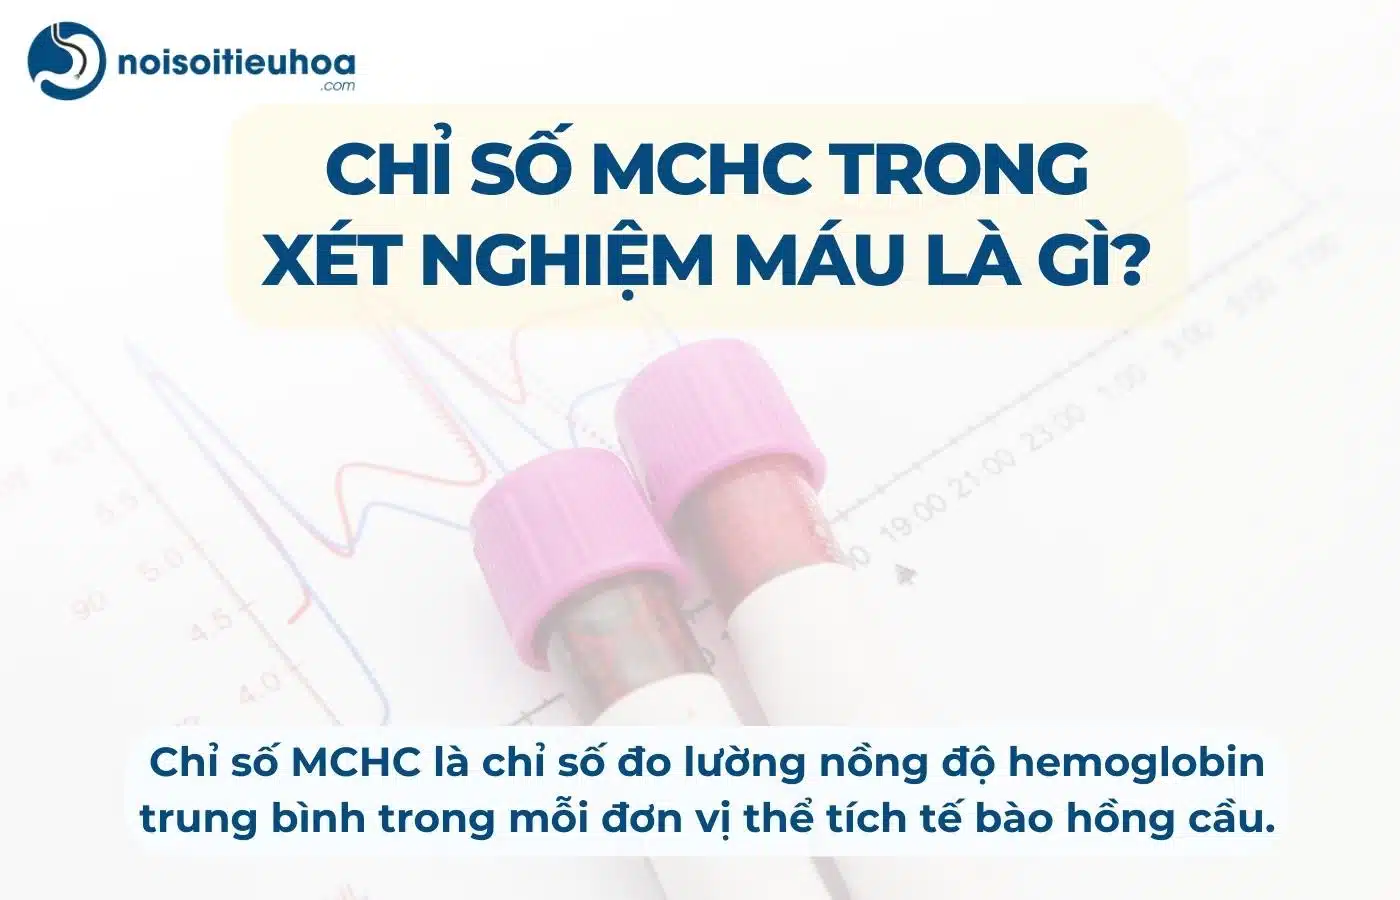 Chỉ số MCHC trong xét nghiệm công thức máu là gì?